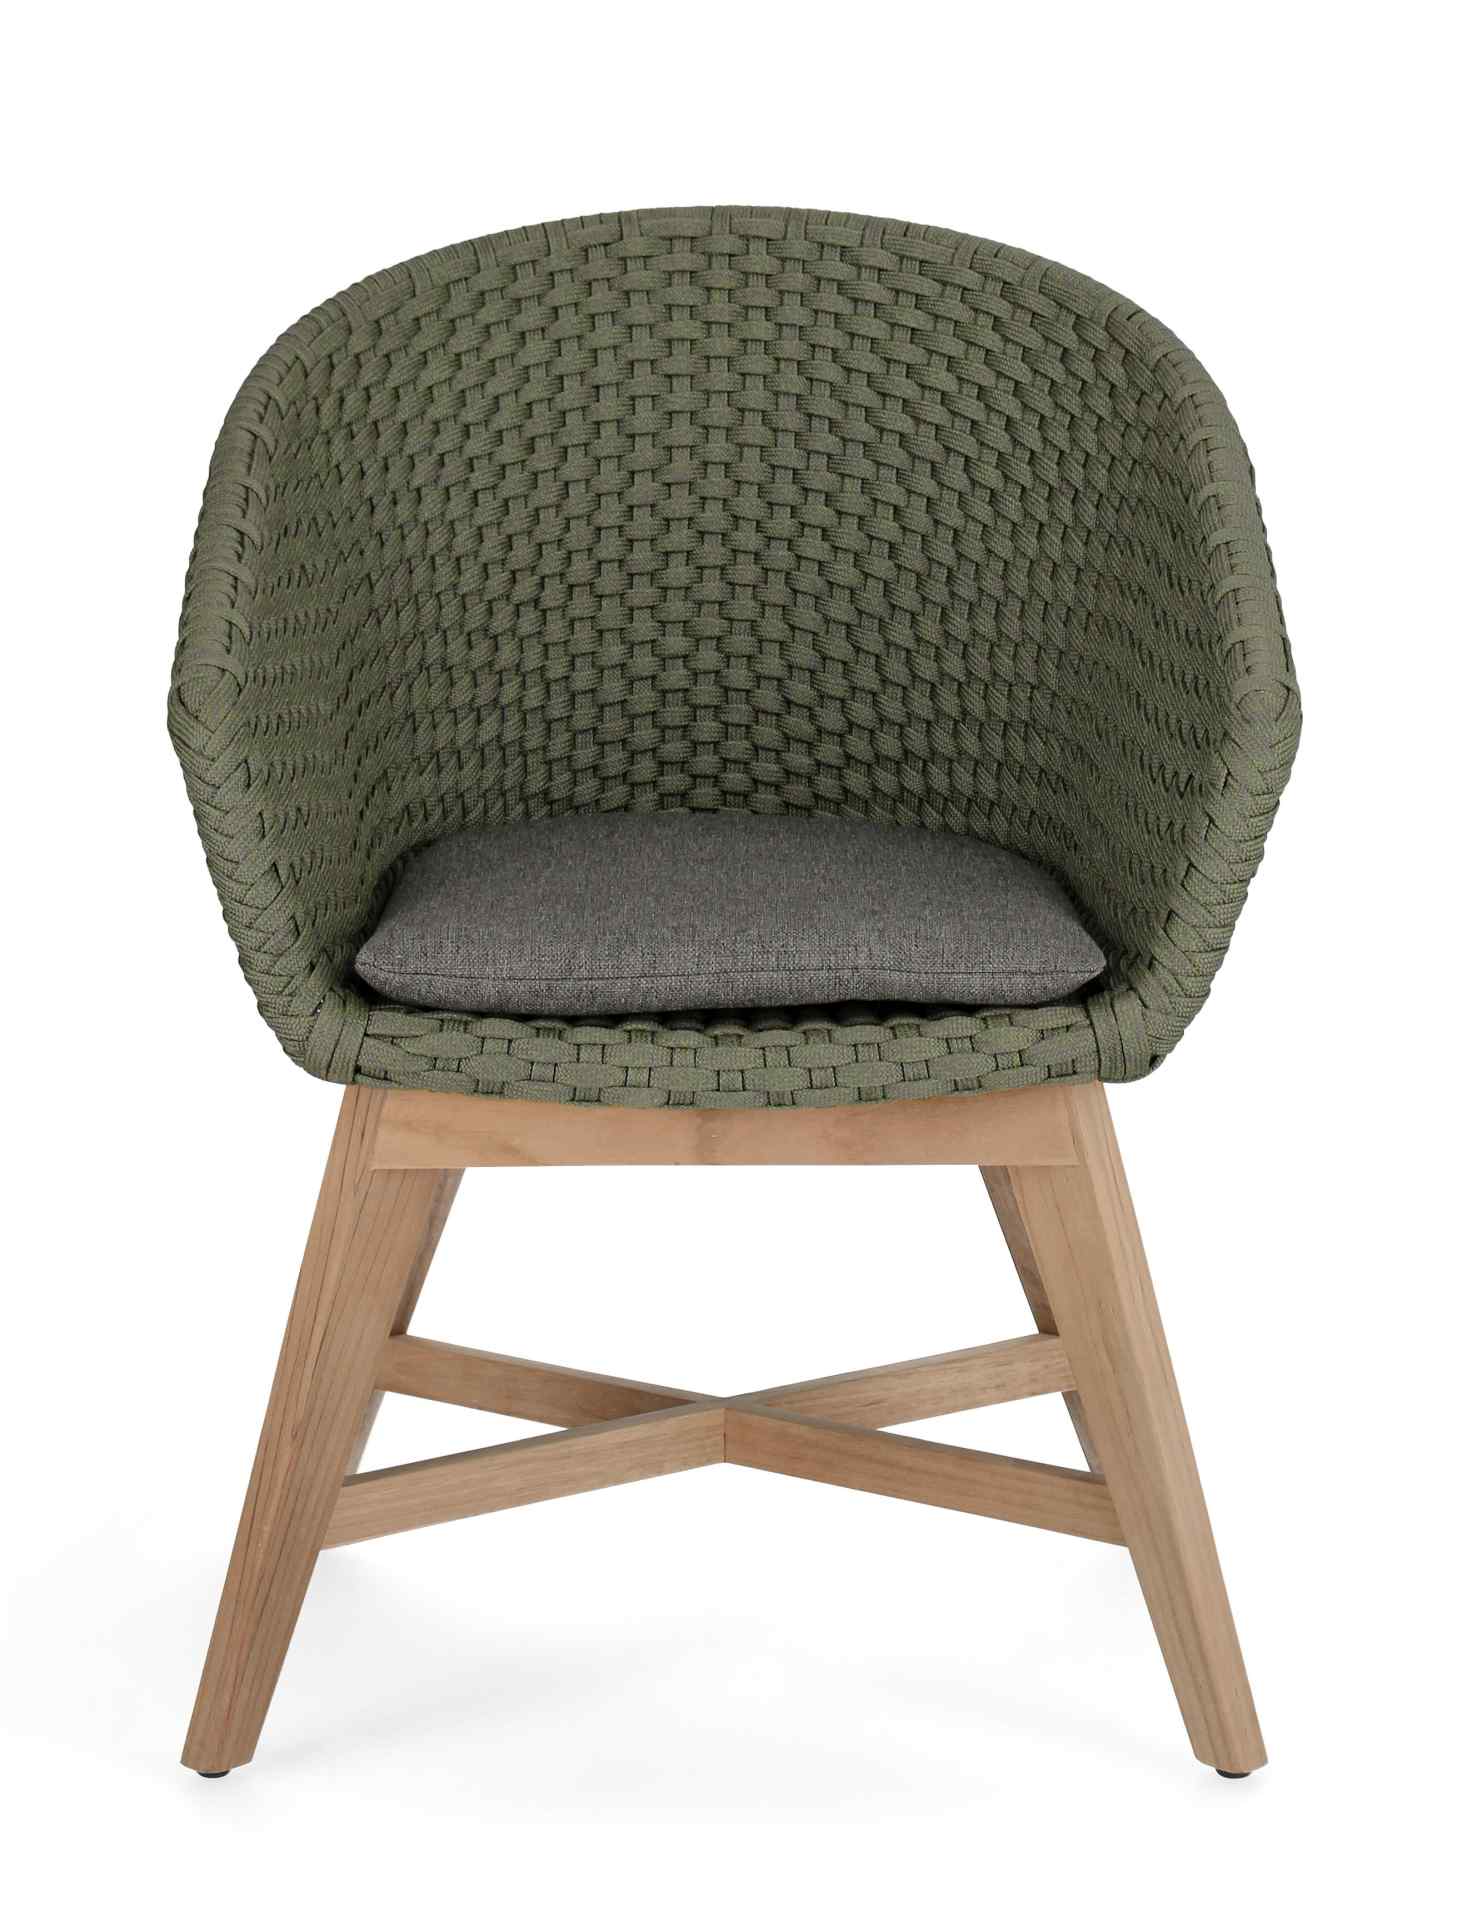 Der Gartenstuhl Coachella überzeugt mit seinem modernen Design. Gefertigt wurde er aus Olefin-Stoff, welcher einen grünen Farbton besitzt. Das Gestell ist aus Teakholz und hat eine natürliche Farbe. Der Stuhl verfügt über eine Sitzhöhe von 46 cm und ist f